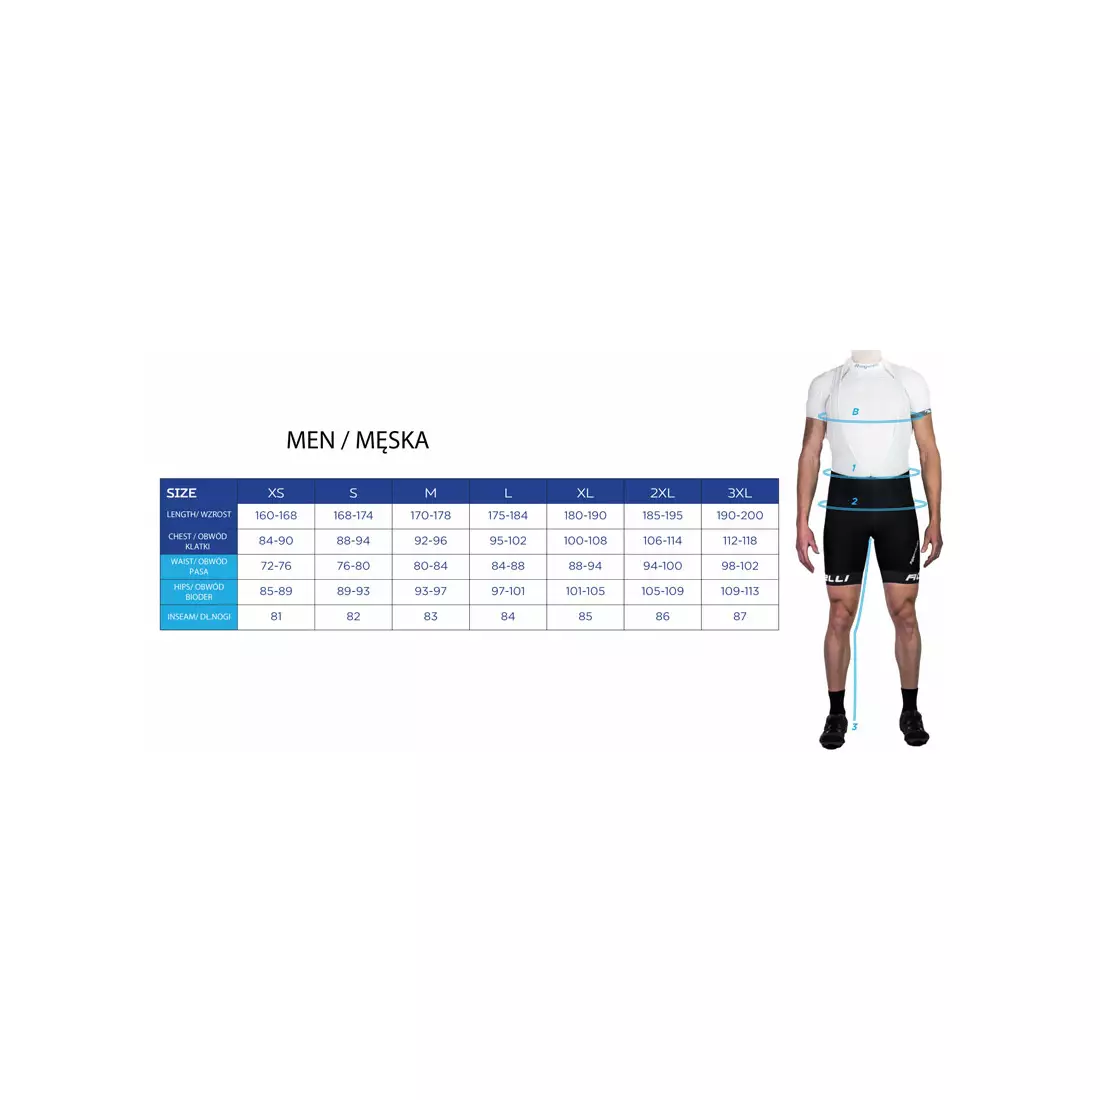 ROGELLI TRI FLORIDA 030.001 men's triathlon suit, blue and black